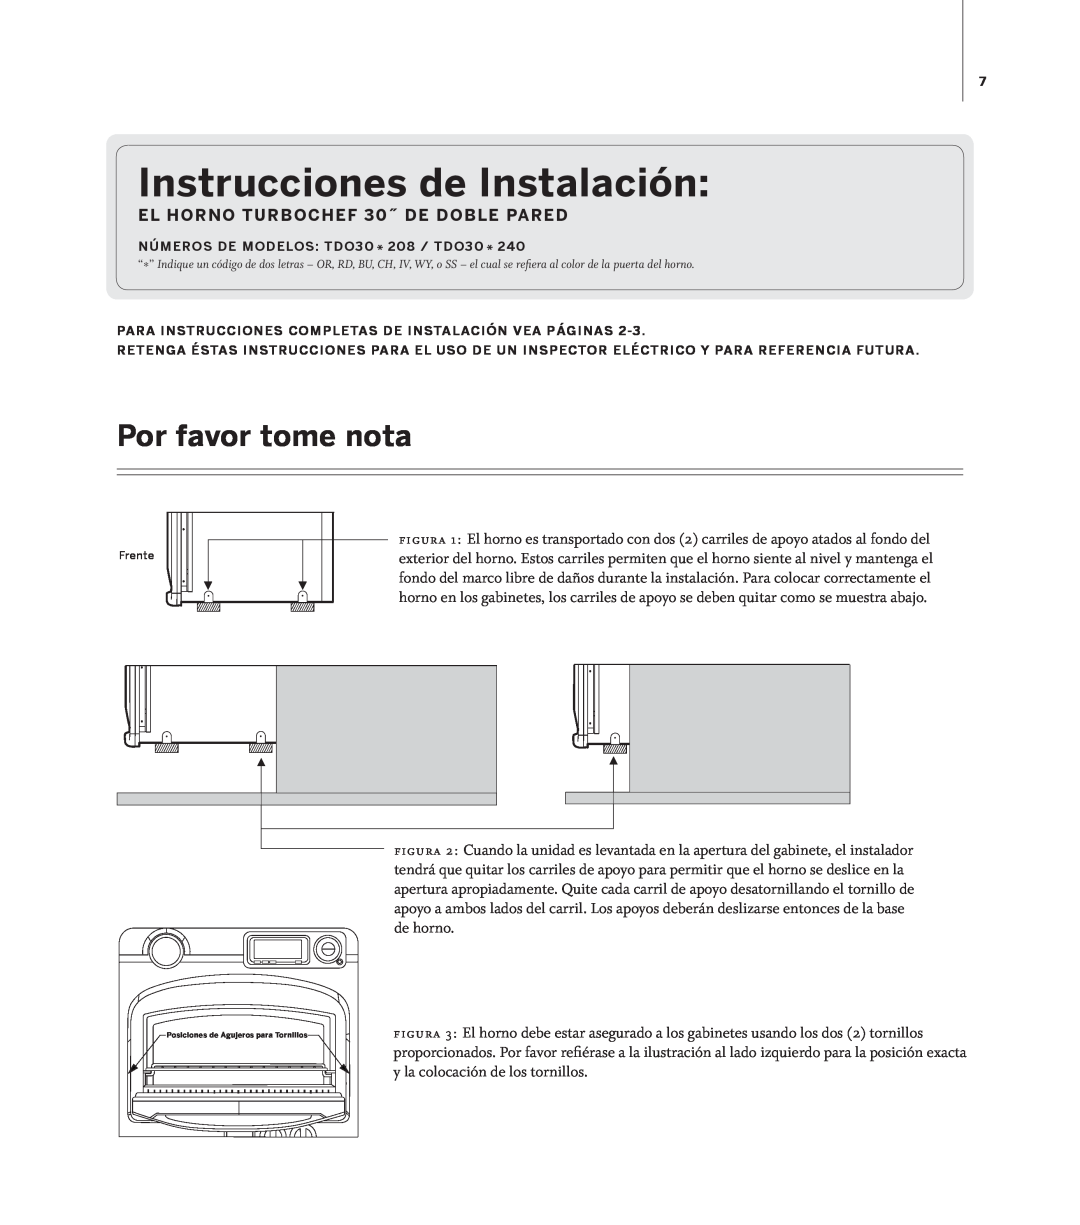 Turbo Chef Technologies TD030* 208 installation instructions Instrucciones de Instalación, Por favor tome nota 